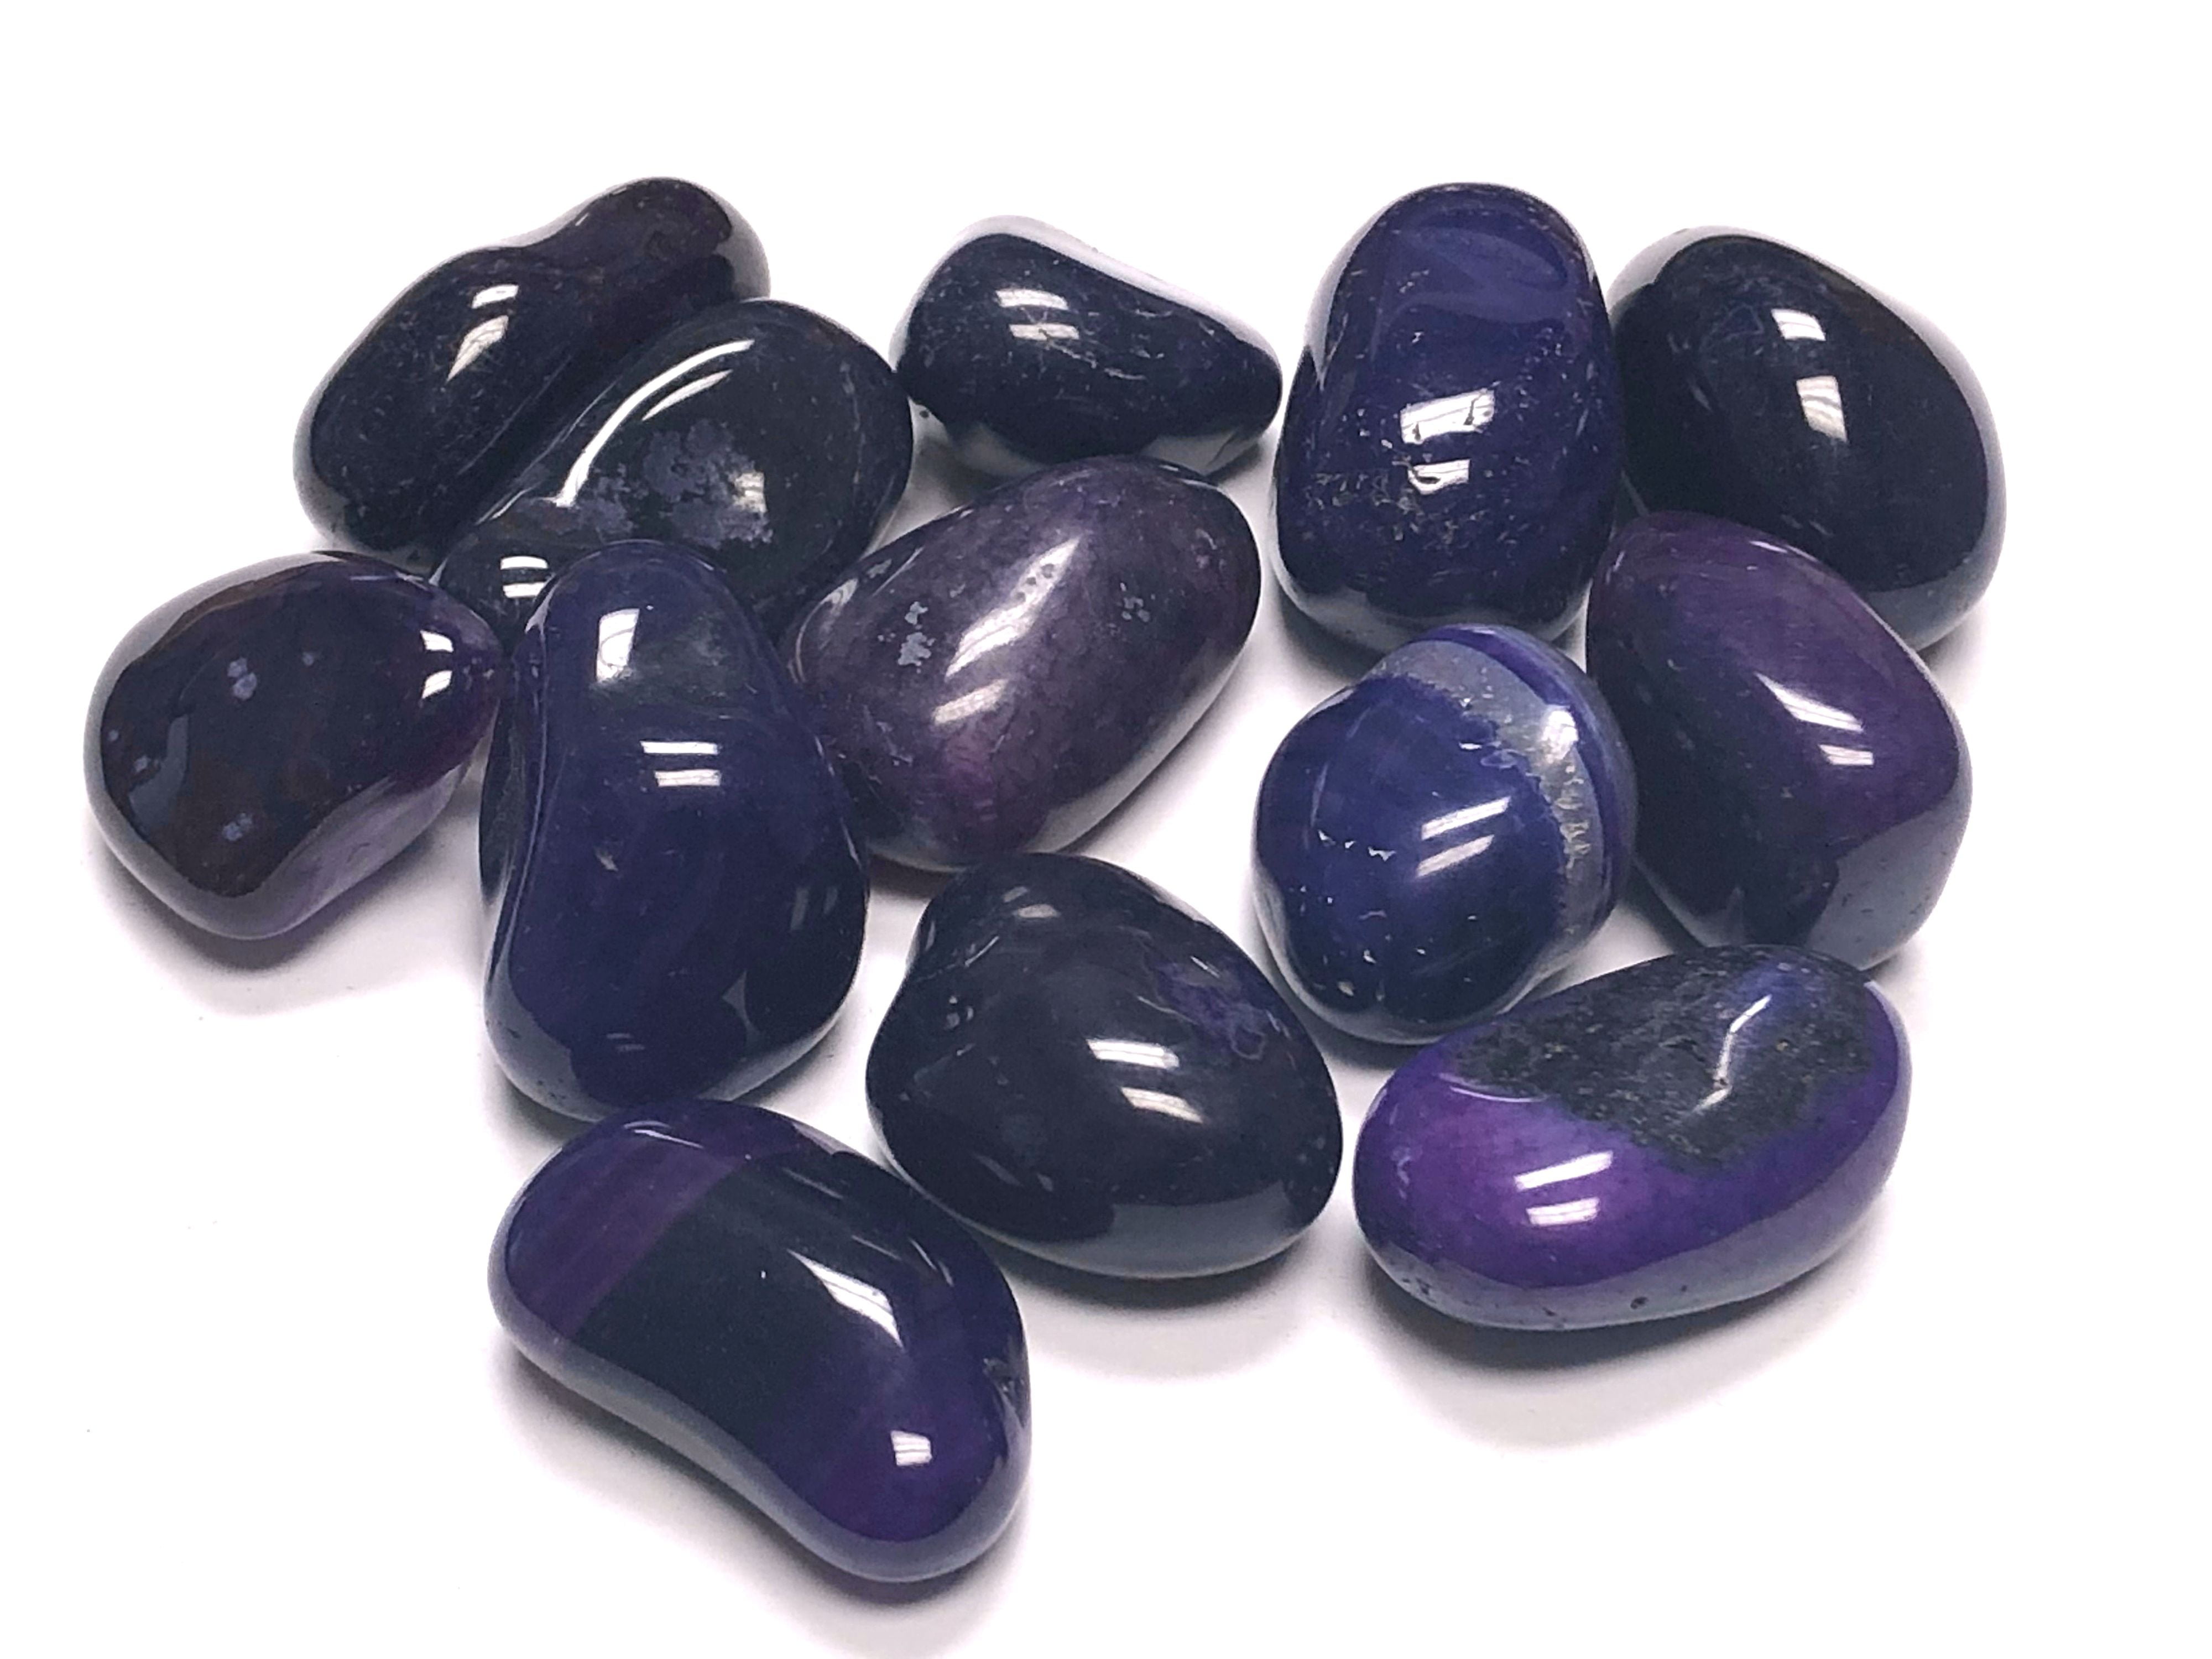 Tumbled Amethyst Stones 1 lb Lot Zentron™ Crystals